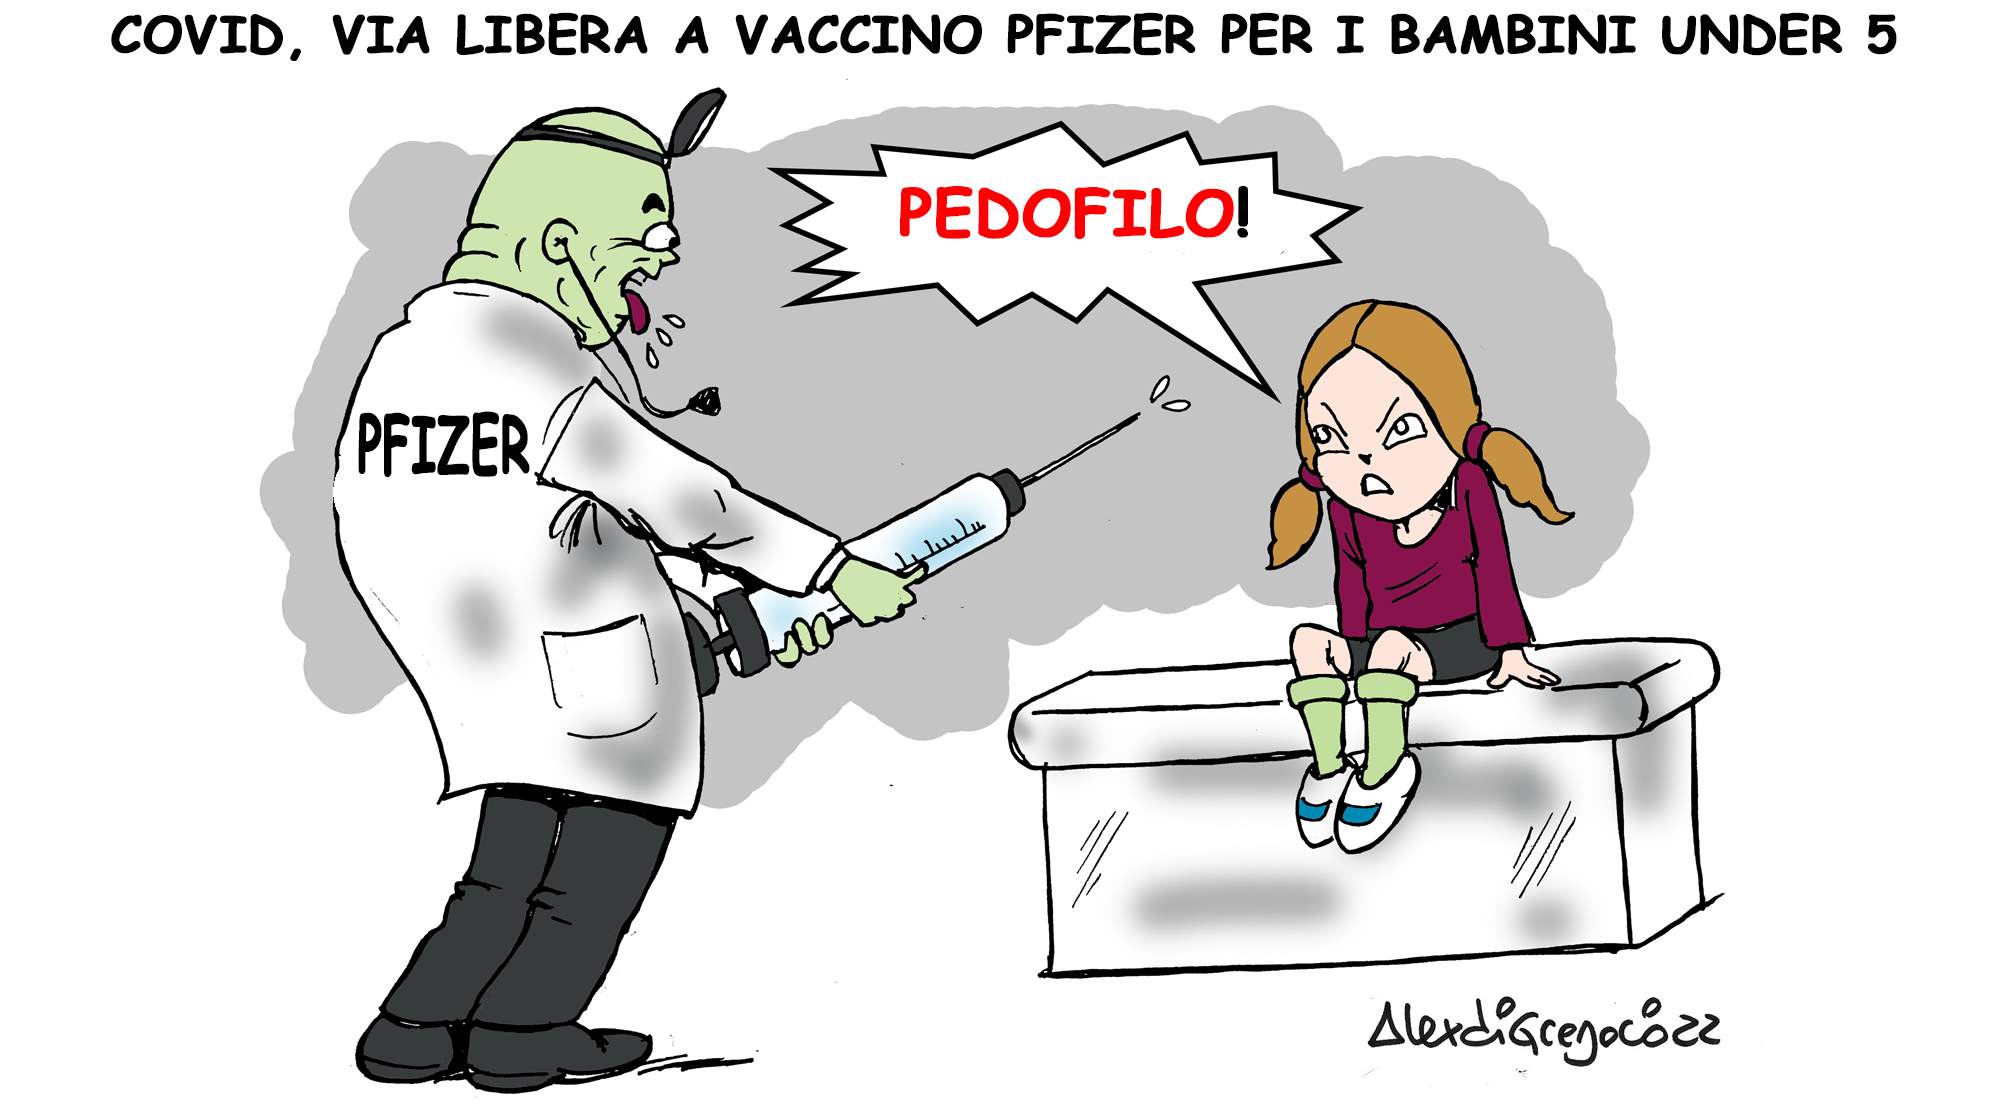 LA VIGNETTA di ALEX DI GREGORIO: “Covid, via libera a vaccino Pfizer per i bambini under 5”